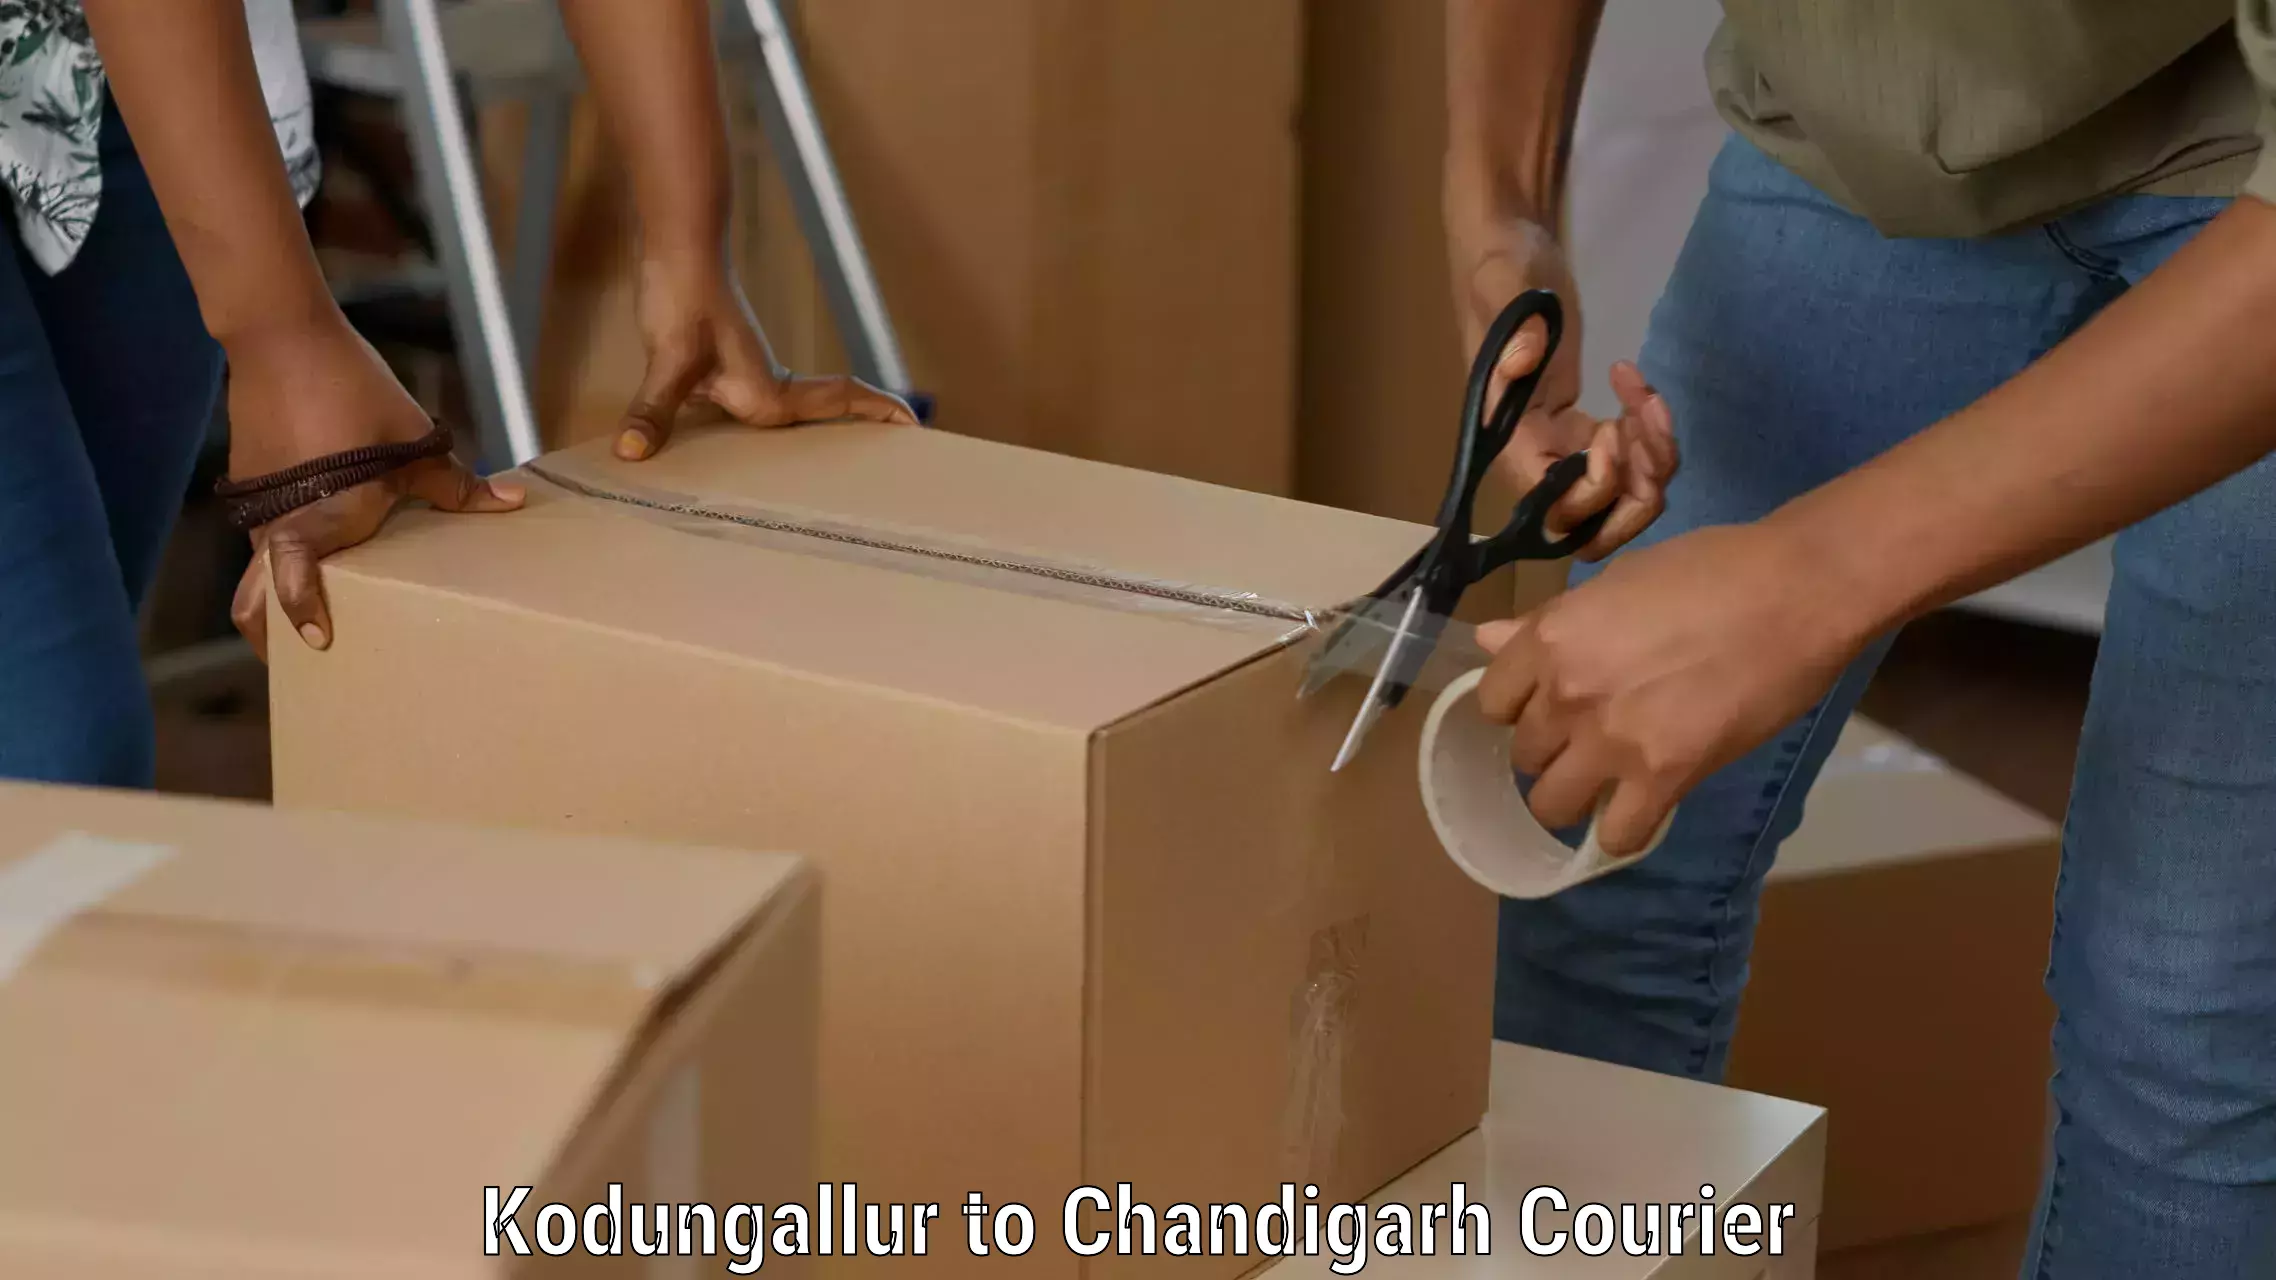 Next-generation courier services Kodungallur to Chandigarh